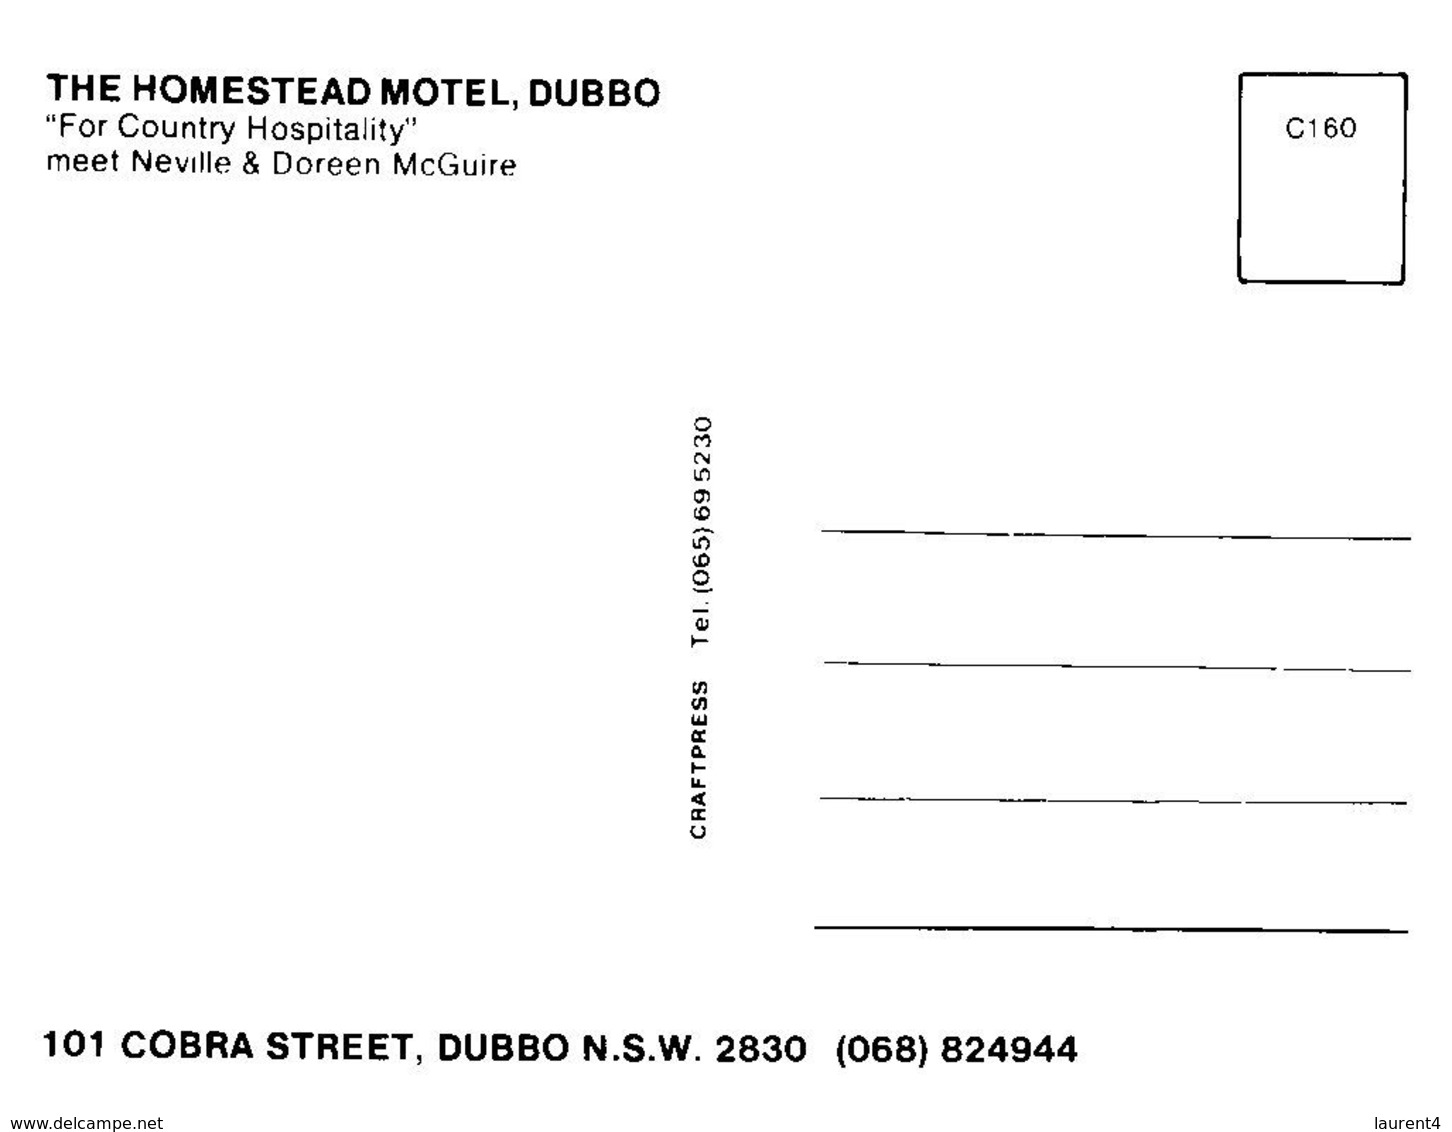 (E 1) Australia - NSW - Dubbo Motor Inn - Homestead Motel - Dubbo